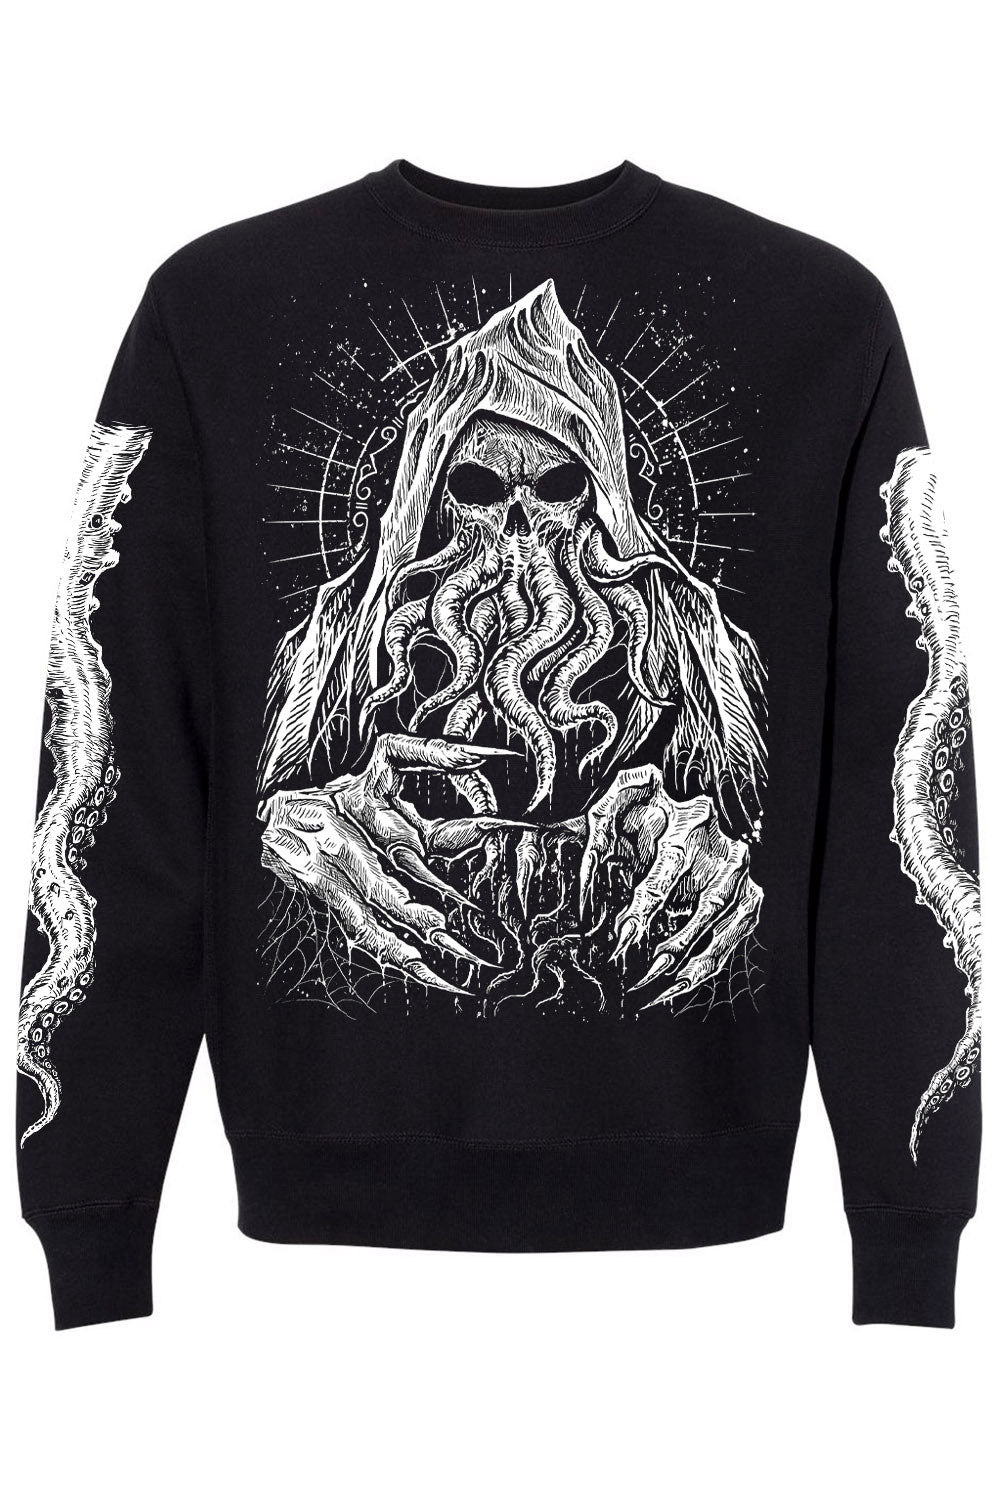 gothic Cthulhu sweatshirt